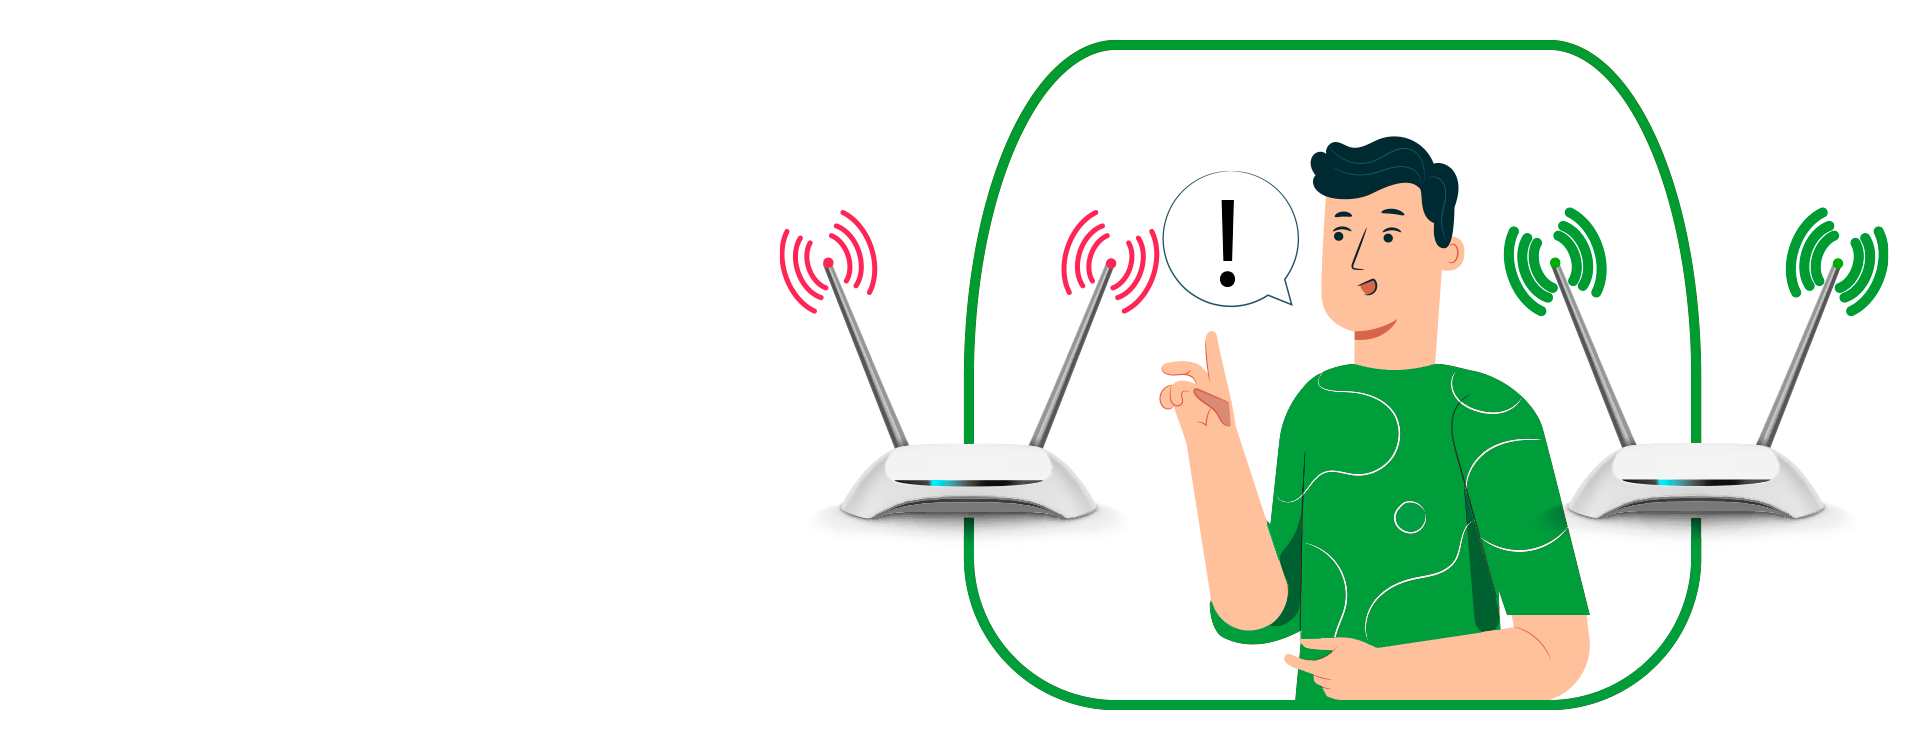 Как усилить Wi-Fi дома - рекомендации